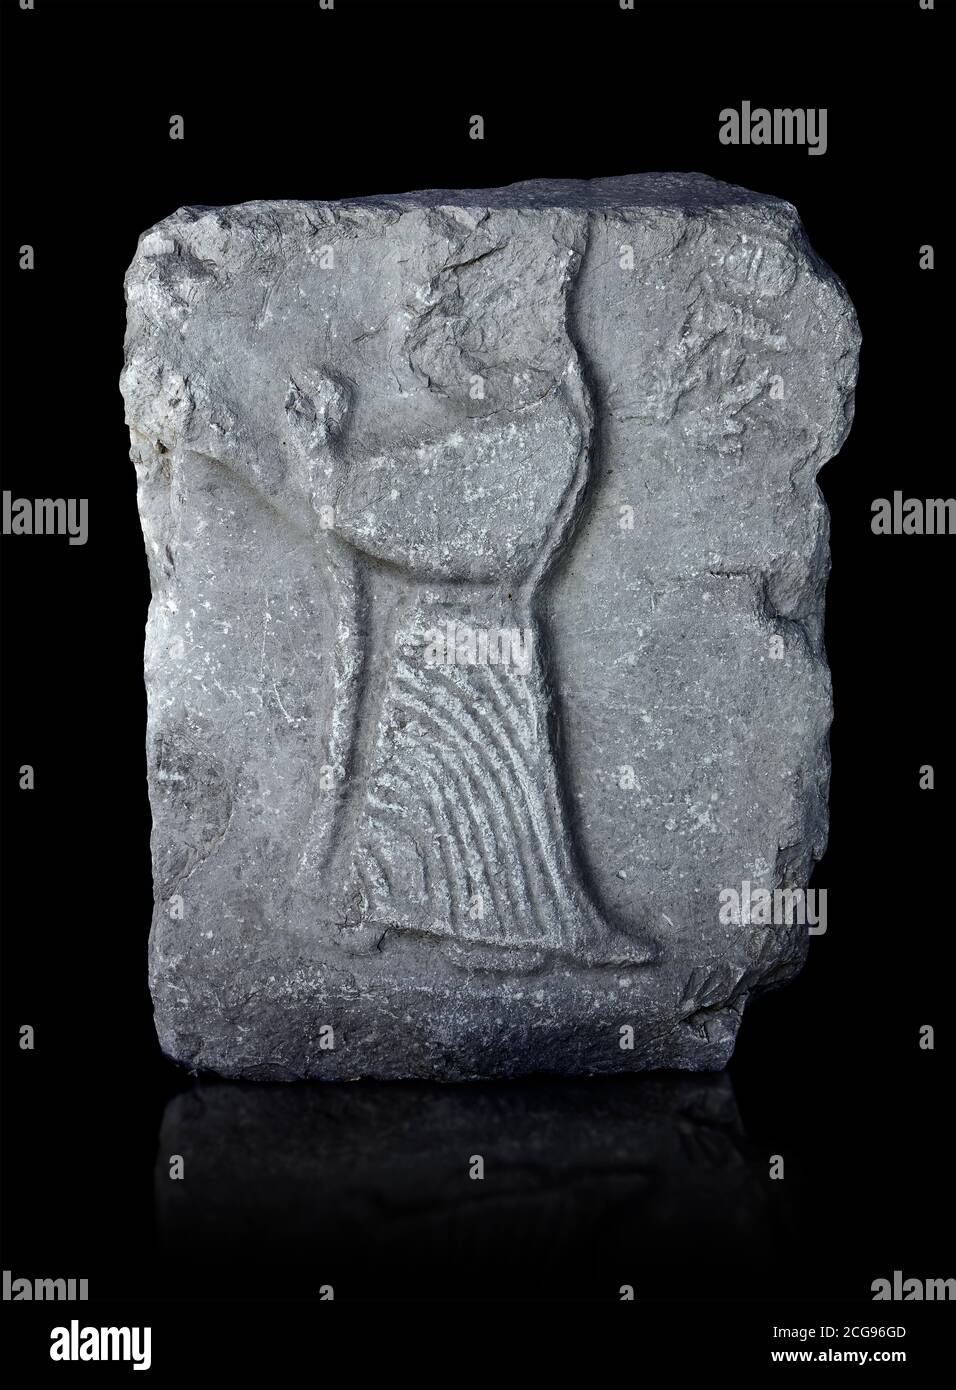 Pannello di rilievo di Hittite della dea Ishtar, capitale di Hattusa, nuovo Regno di Hittite 1450-1200 AC, Museo Archeologico di Bogazkale, Turchia. Foto Stock